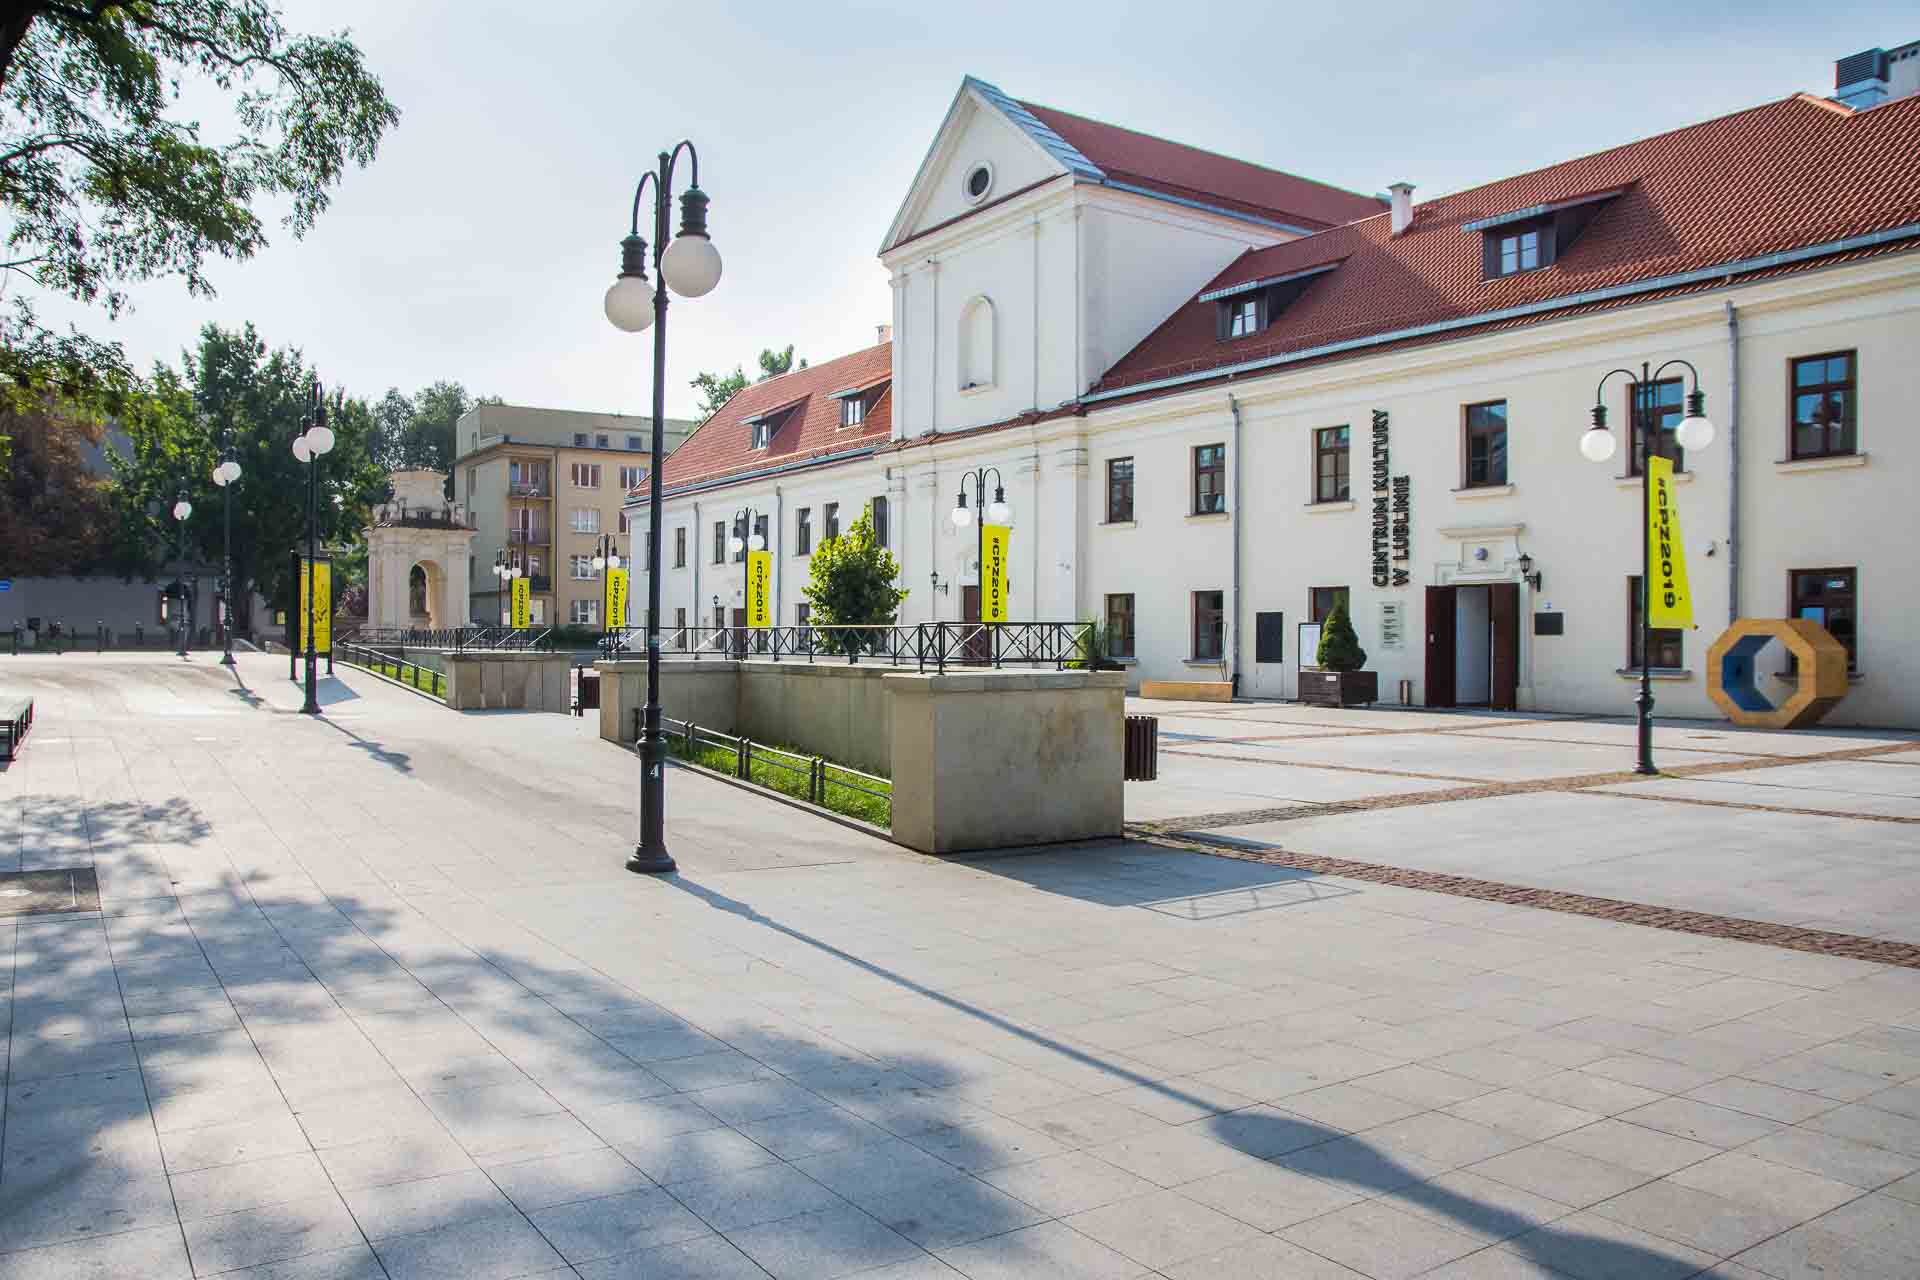 Plac przed Centrum Kultury, nawierzchnia równa z elementami wypukłymi, pokazana droga do głównego wejścia bez barier architektonicznych